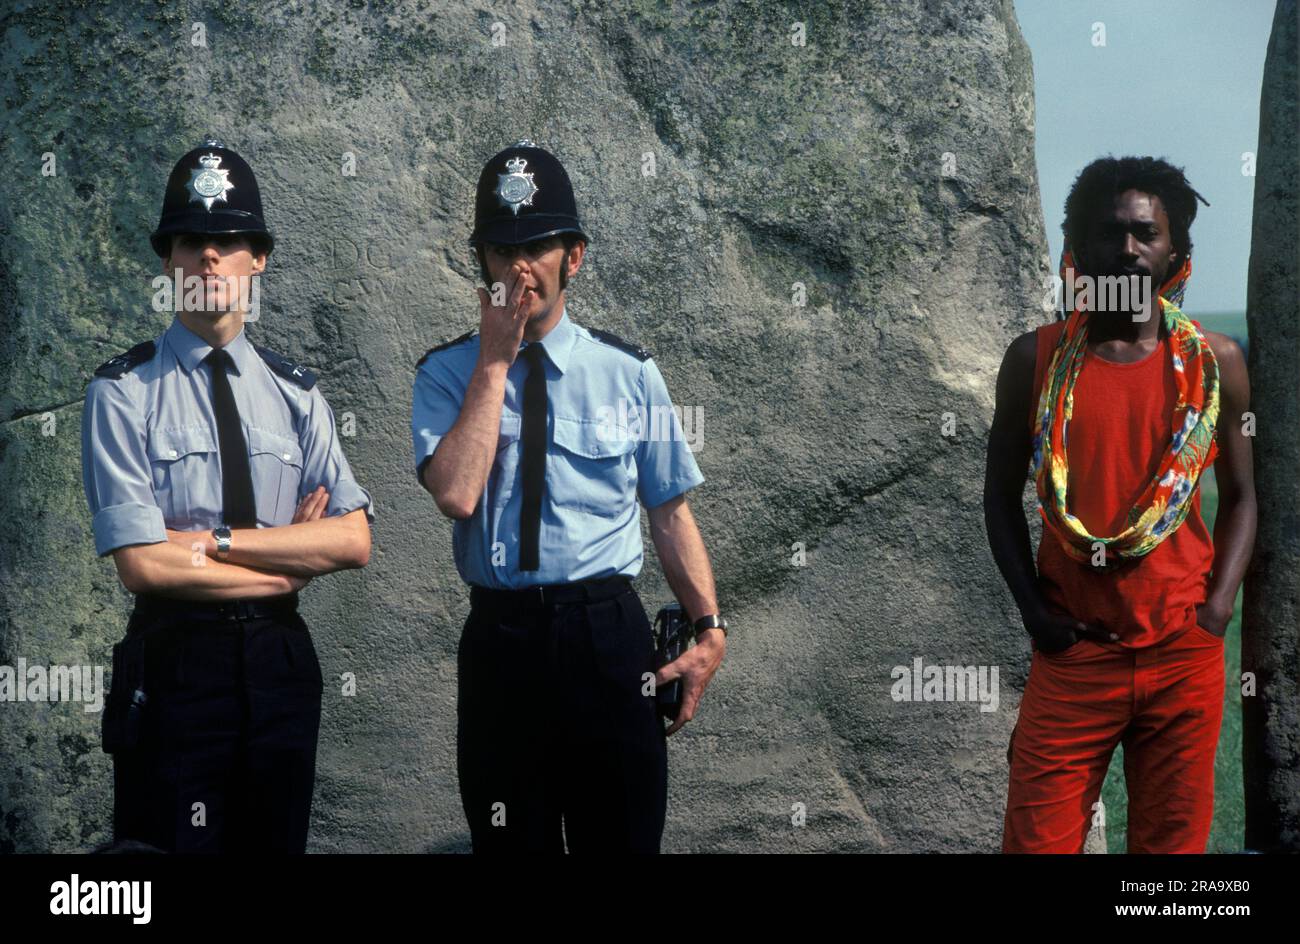 Policier sous la couverture. Stonehenge Free Festival au solstice d'été, Wiltshire, Angleterre 21 juin 1979. Deux policiers dans des manches de chemise et à l'aspect informel. On murmure d'une main en travers de sa bouche, à un policier britannique noir qui tente de ne pas paraître visible ! 1970S ROYAUME-UNI HOMER SYKES Banque D'Images